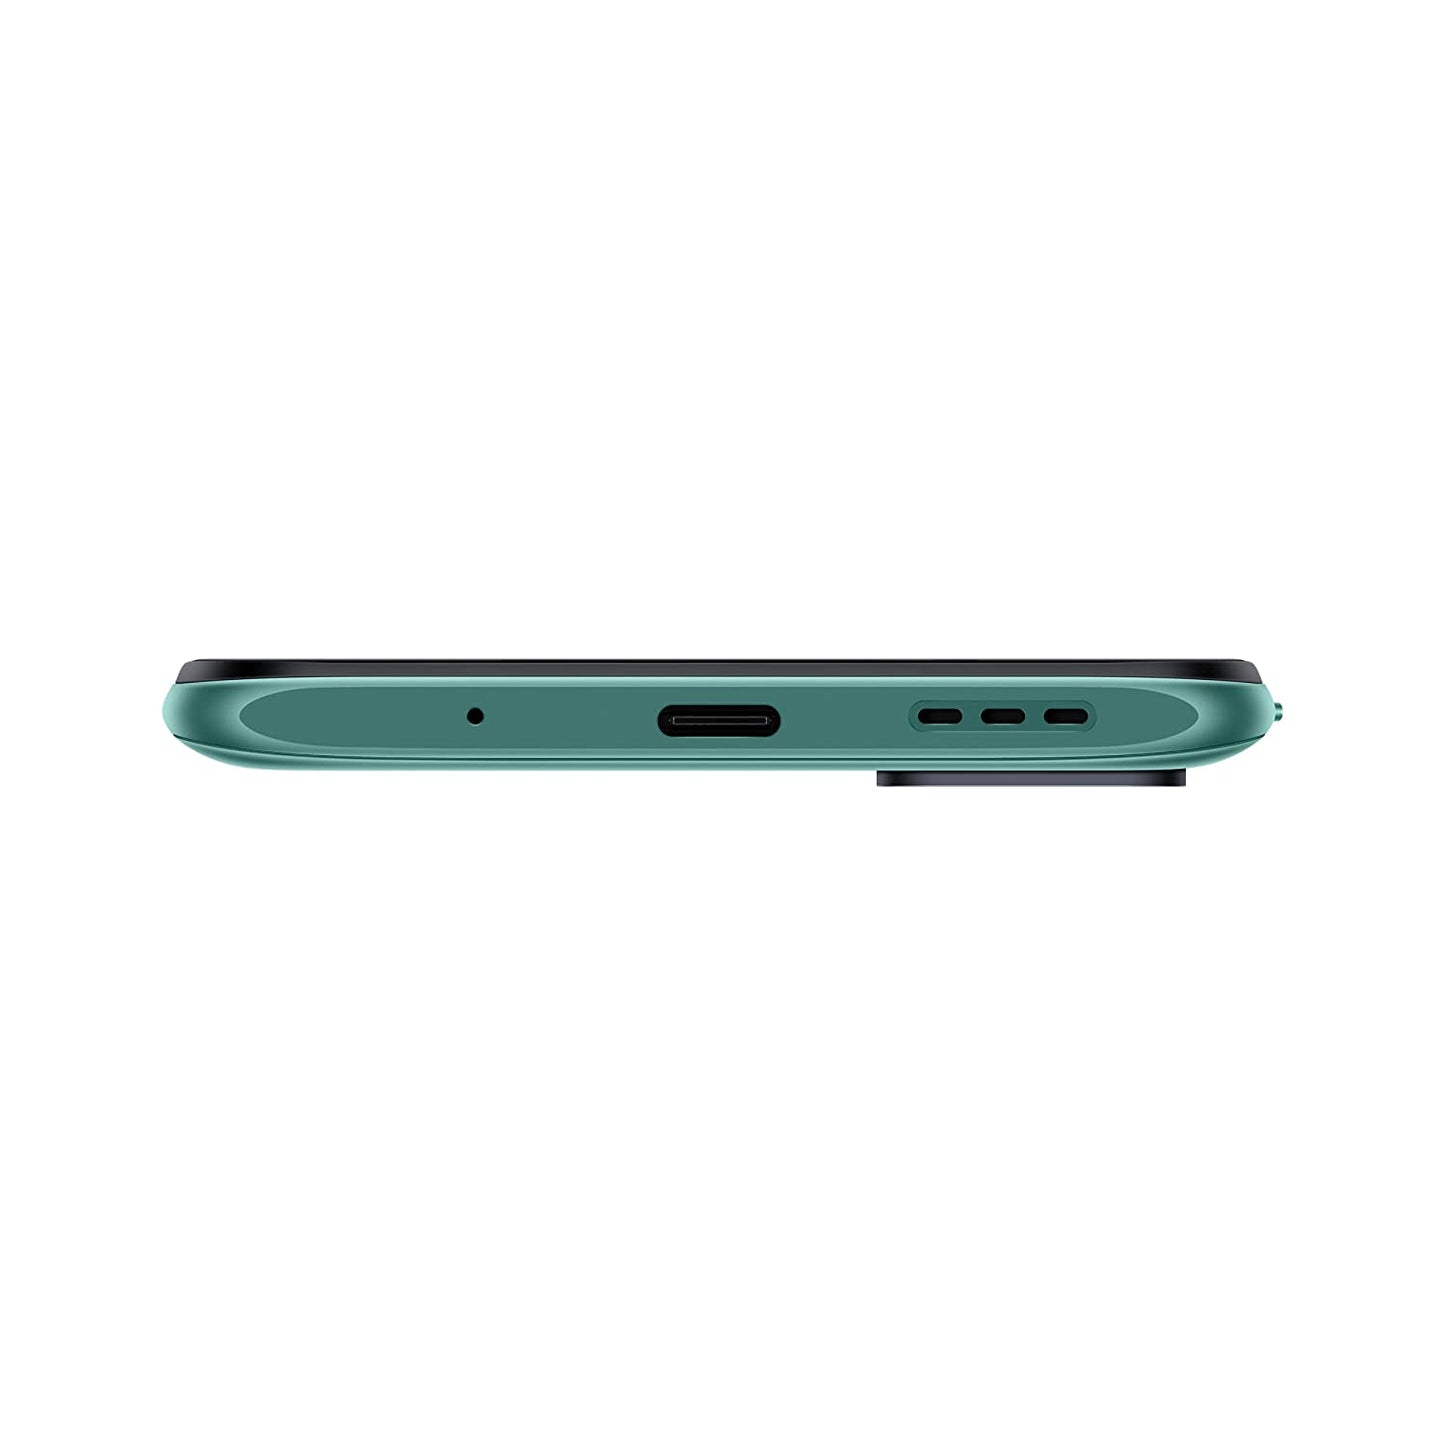 REDMI Note 10T 5G (Mint Green, 64 GB)  (4 GB RAM)